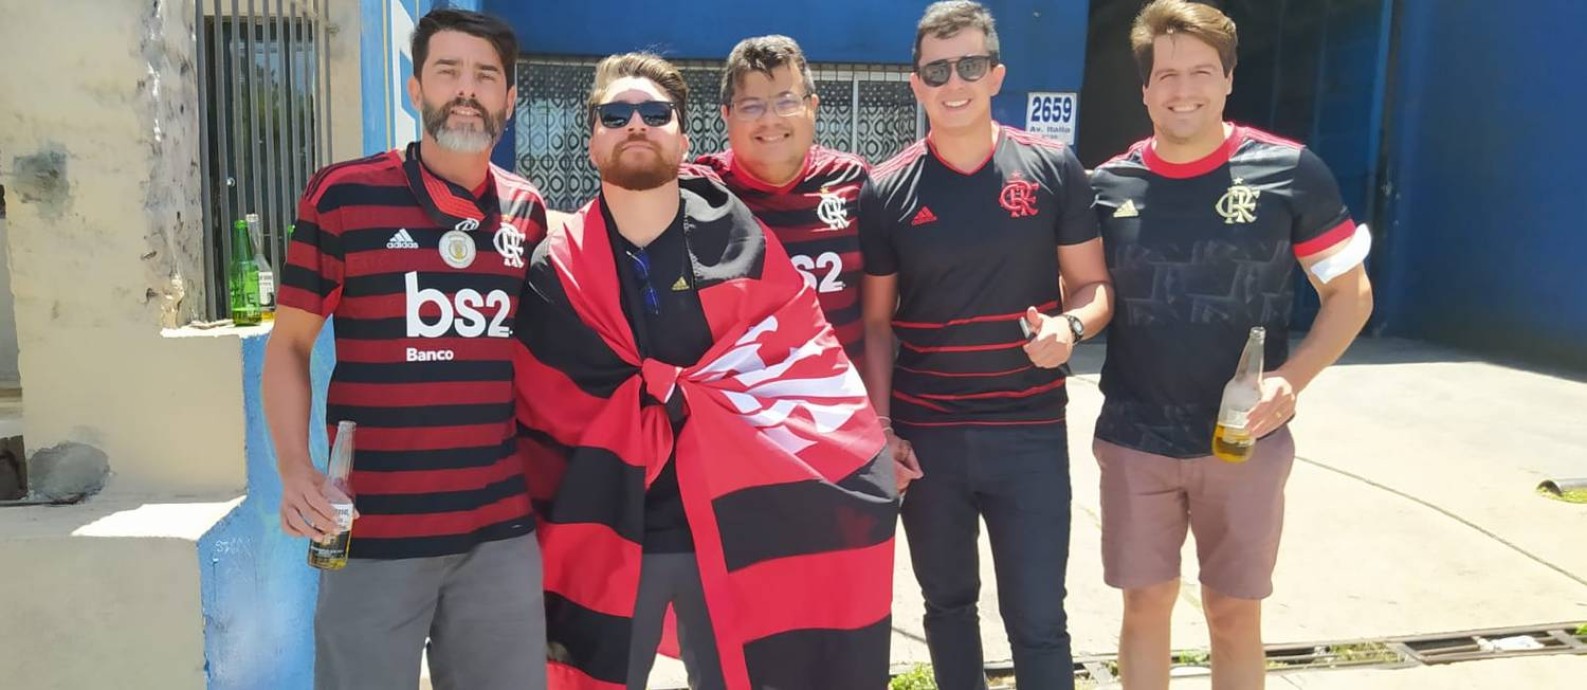 Fábio Onias com a bandeira do Flamengo Foto: Douglas Rocha/Especial para O GLOBO